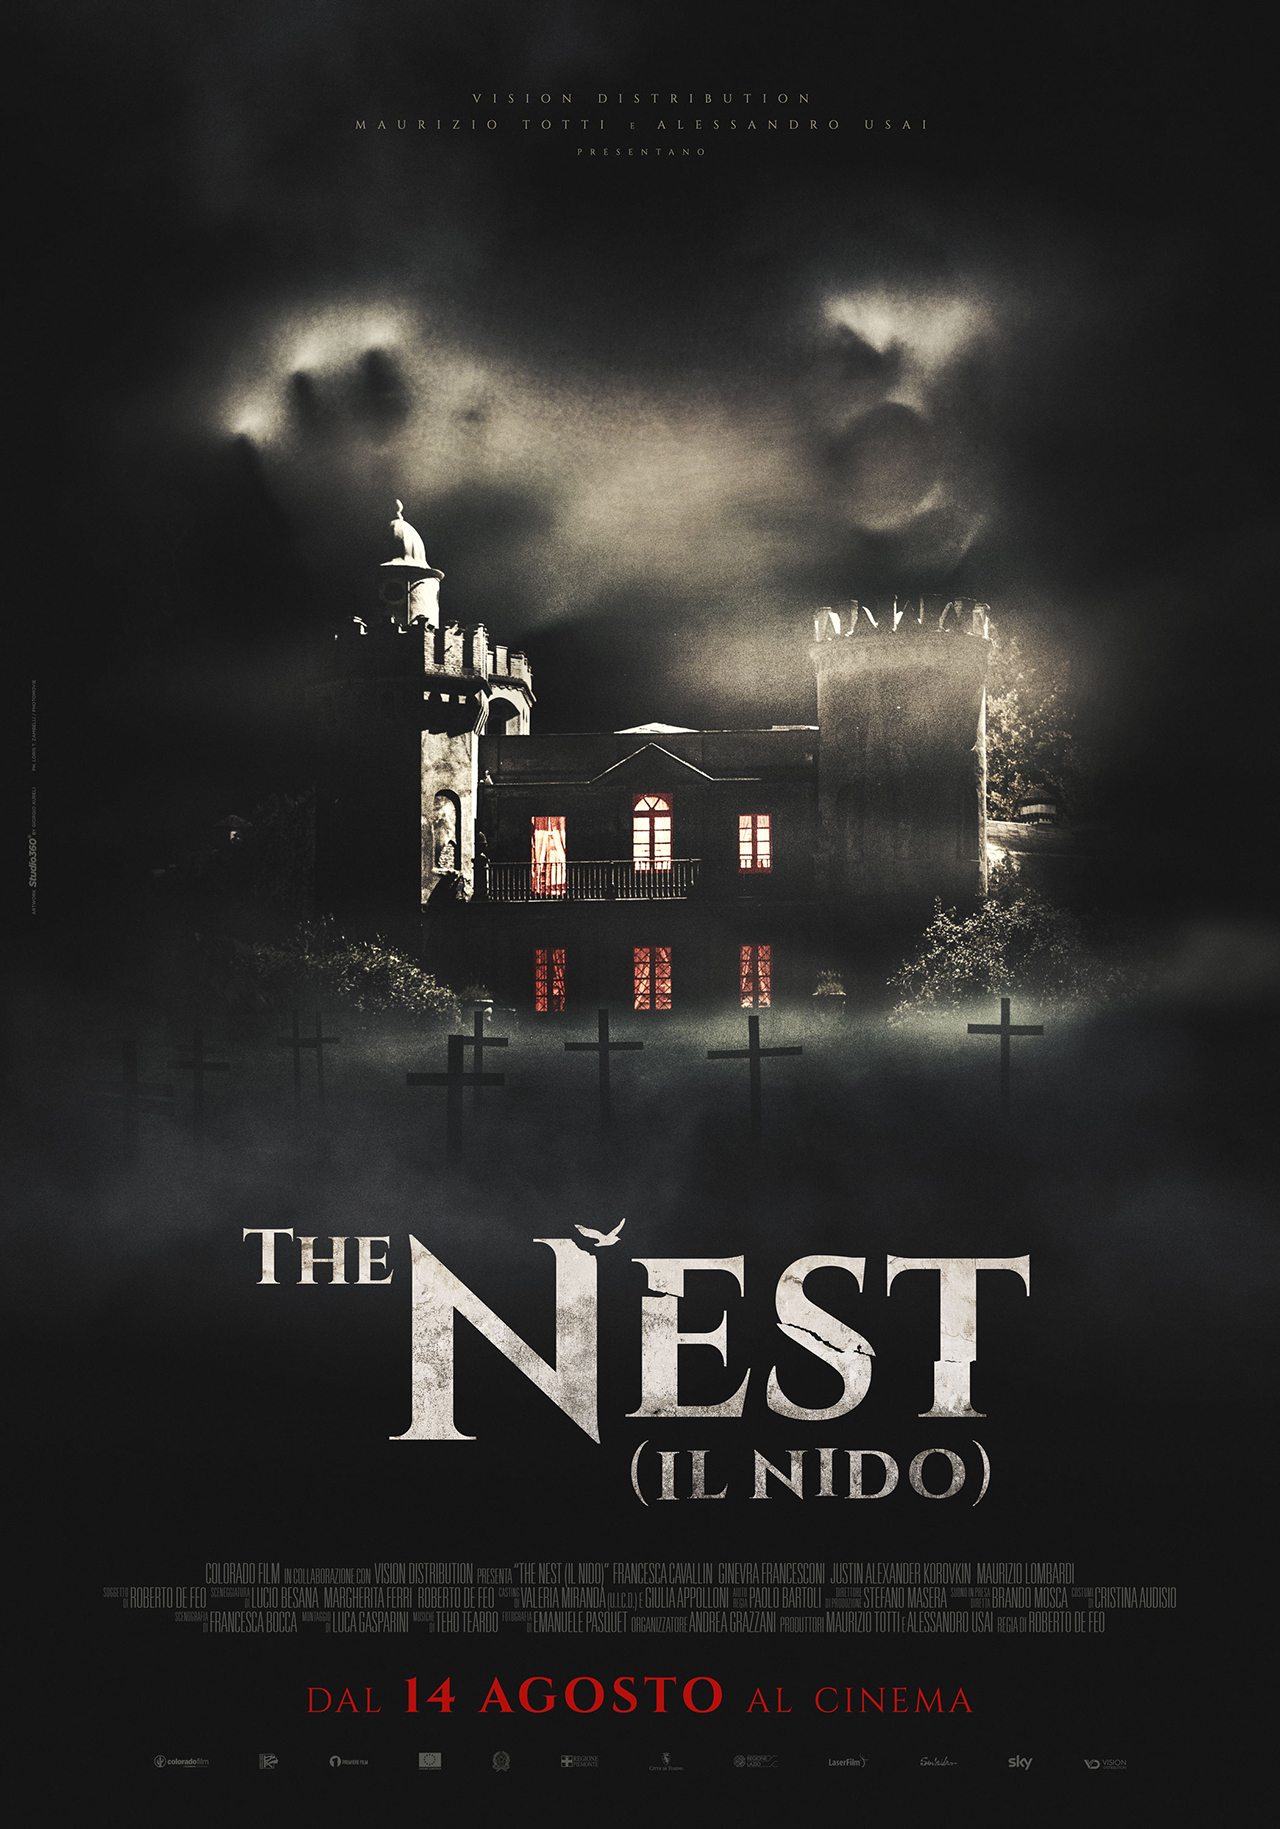  Dall'articolo: The Nest - Il nido, il poster ufficiale del film.